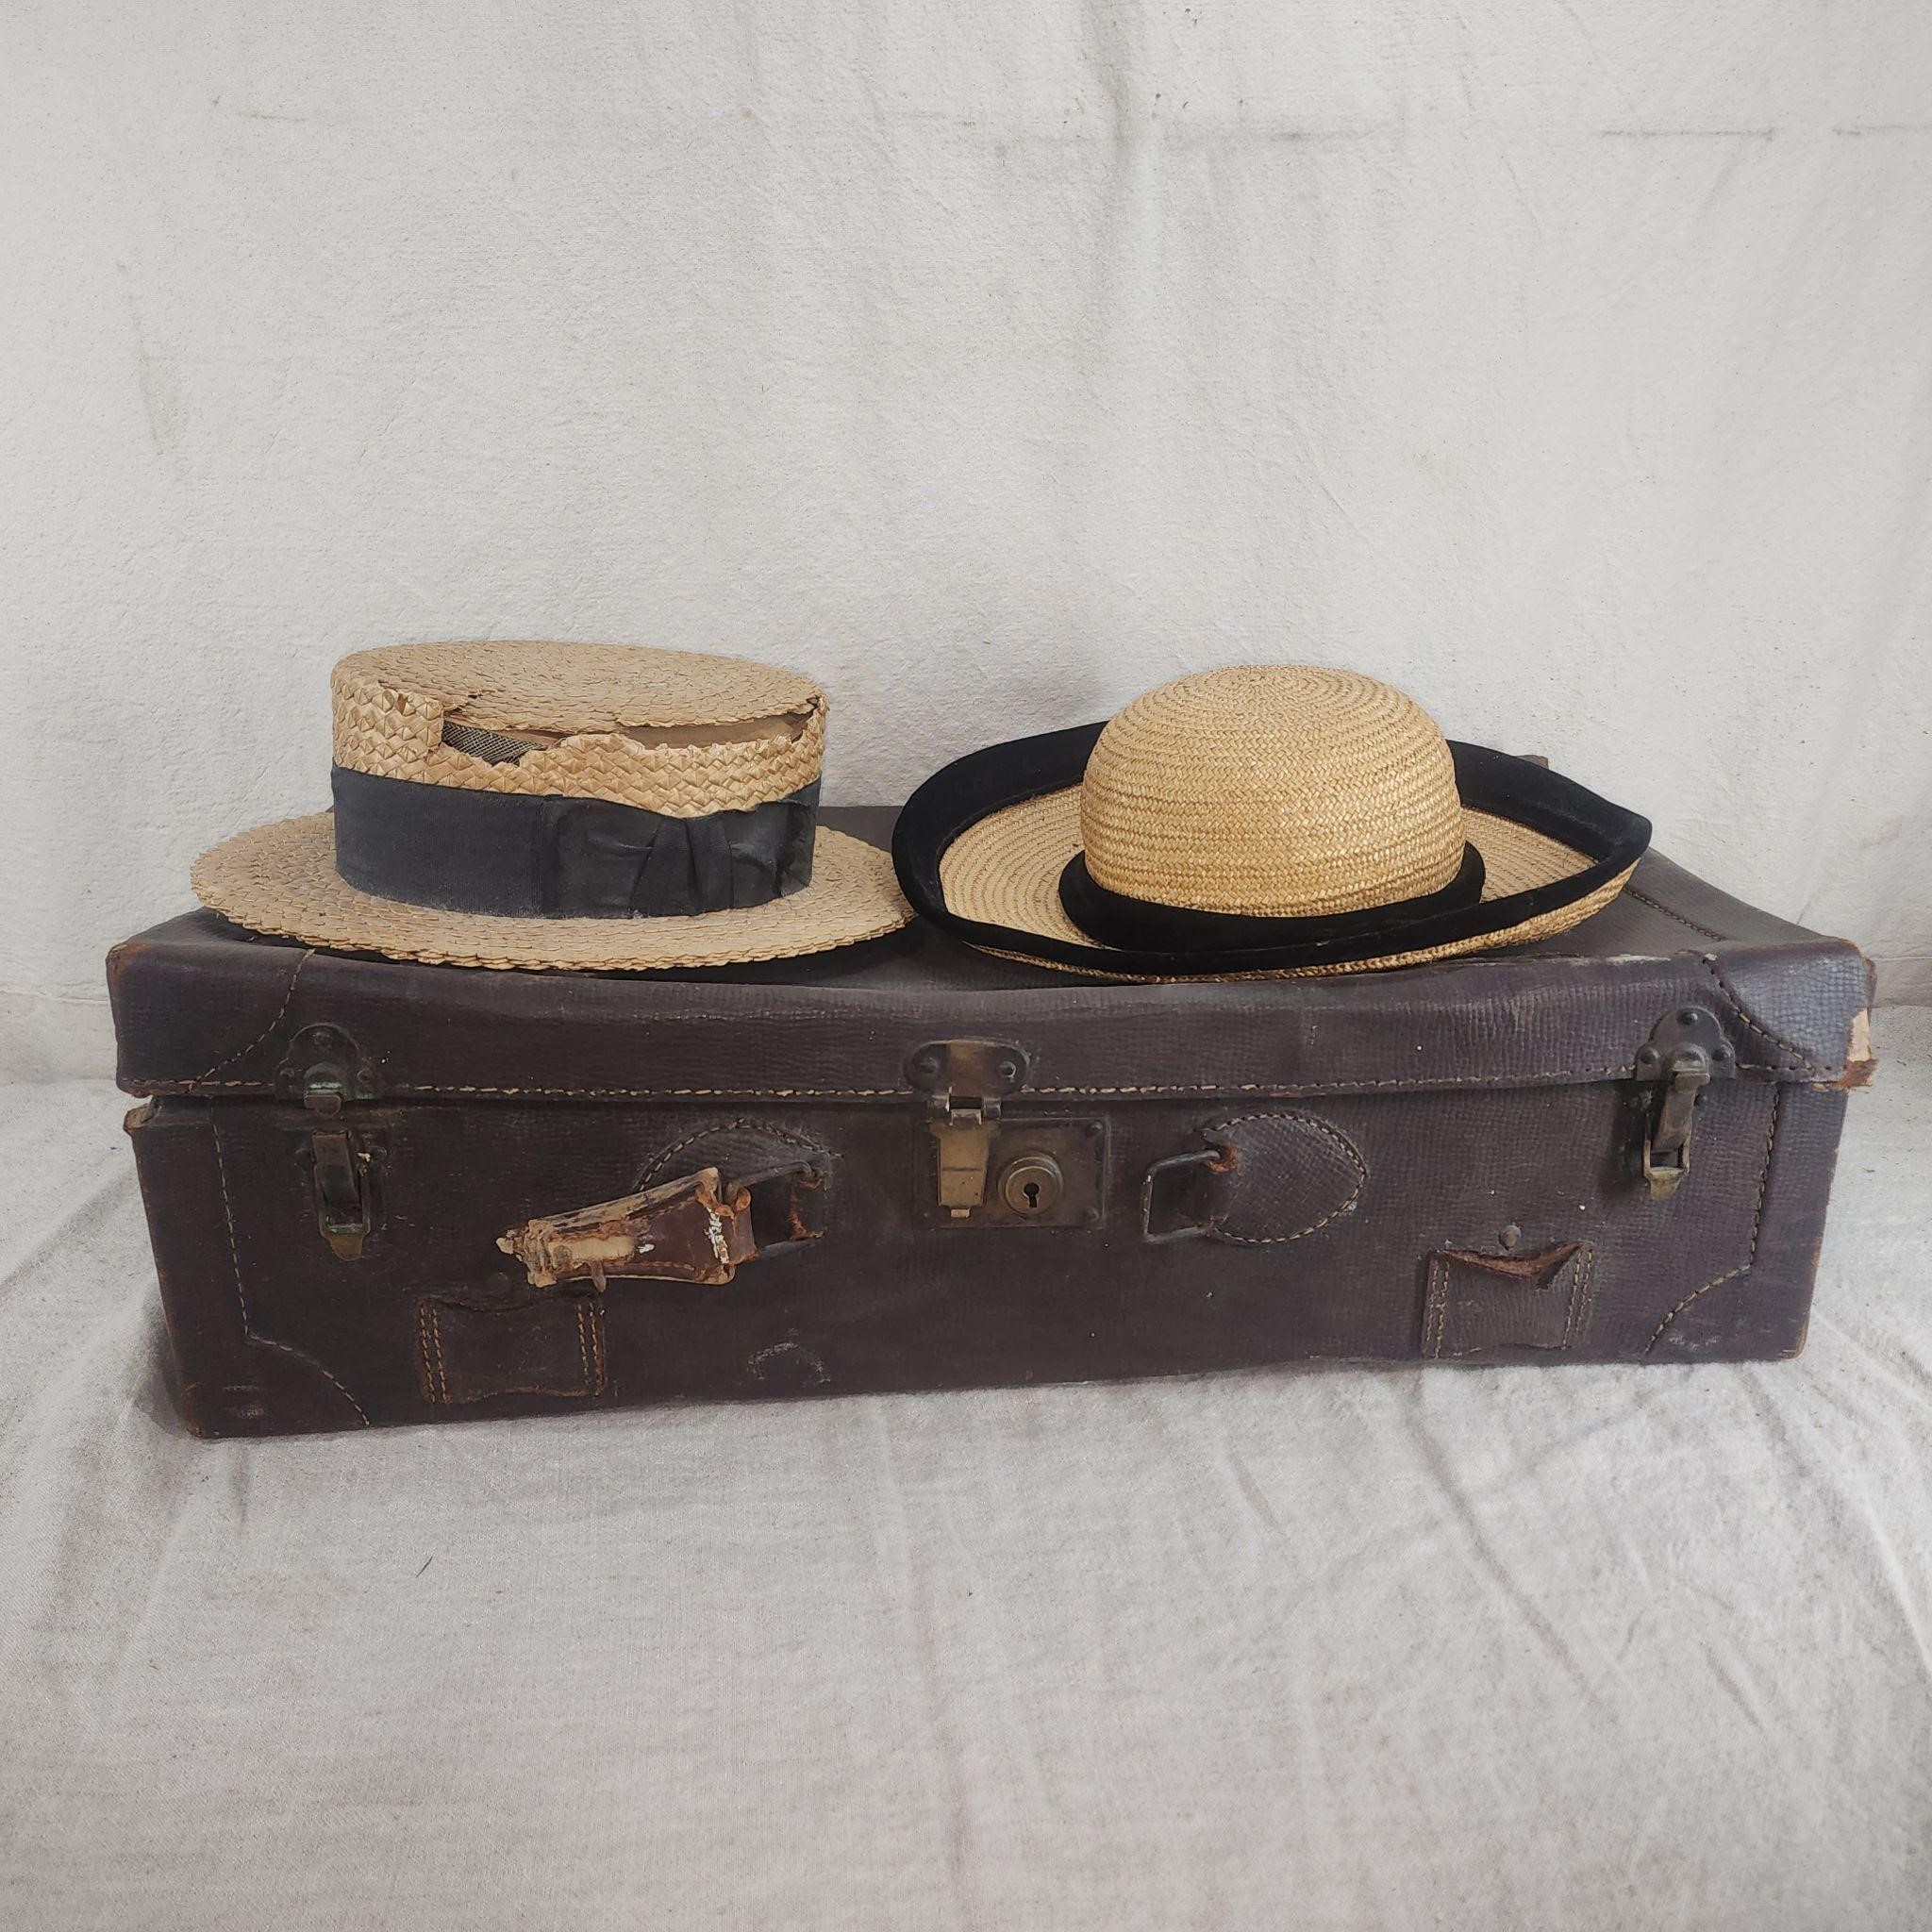 Vintage/antique hats & leather suitcase